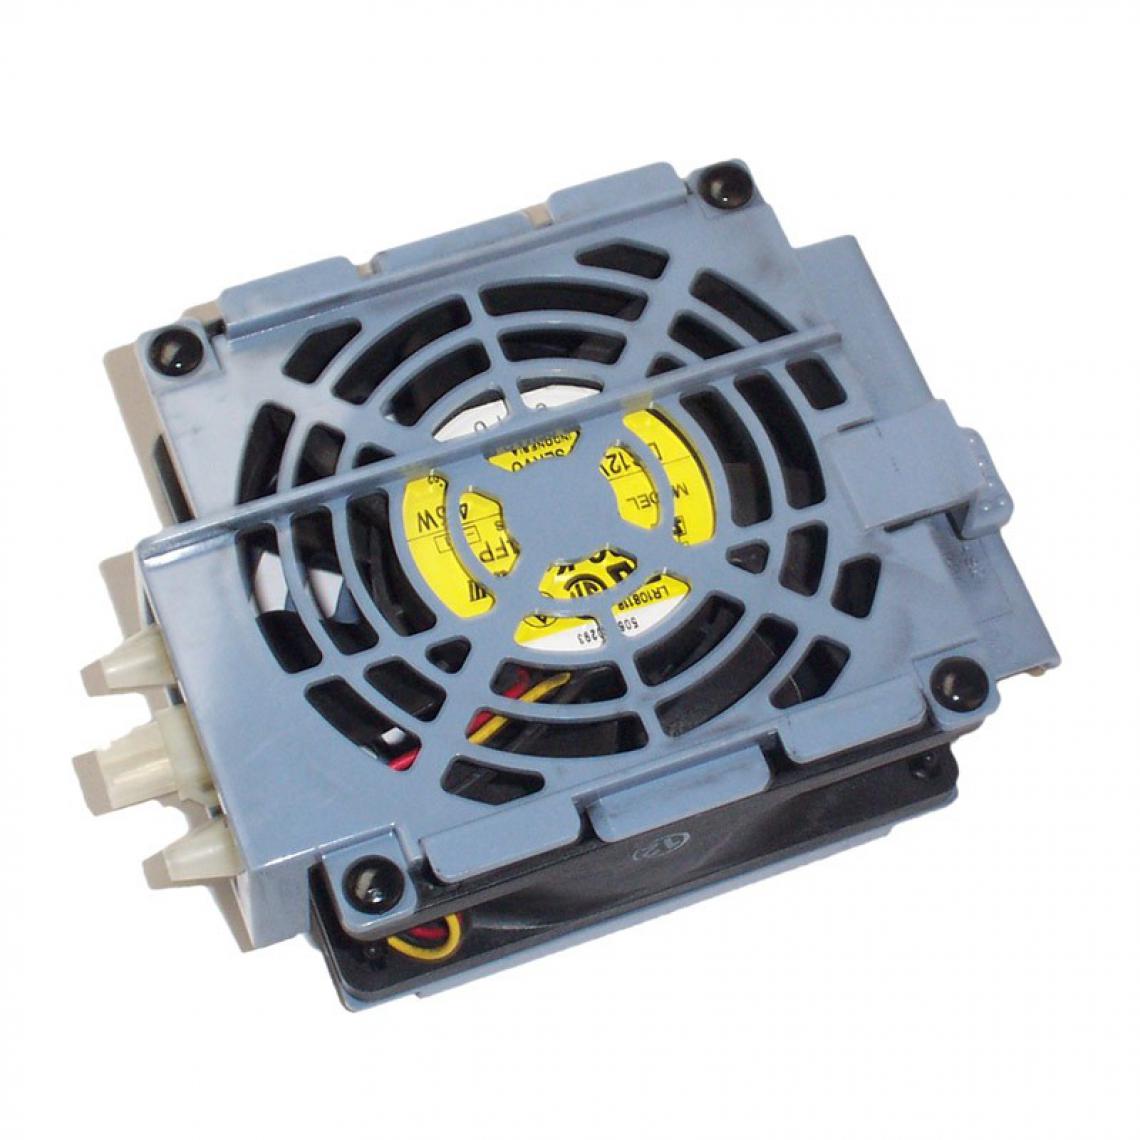 Hp - Ventilateur HP D8228-63013 DC 12V Fan 3-Pin Rack + Kit LH3000 LH6000 5042-4921 - Ventilateur Pour Boîtier